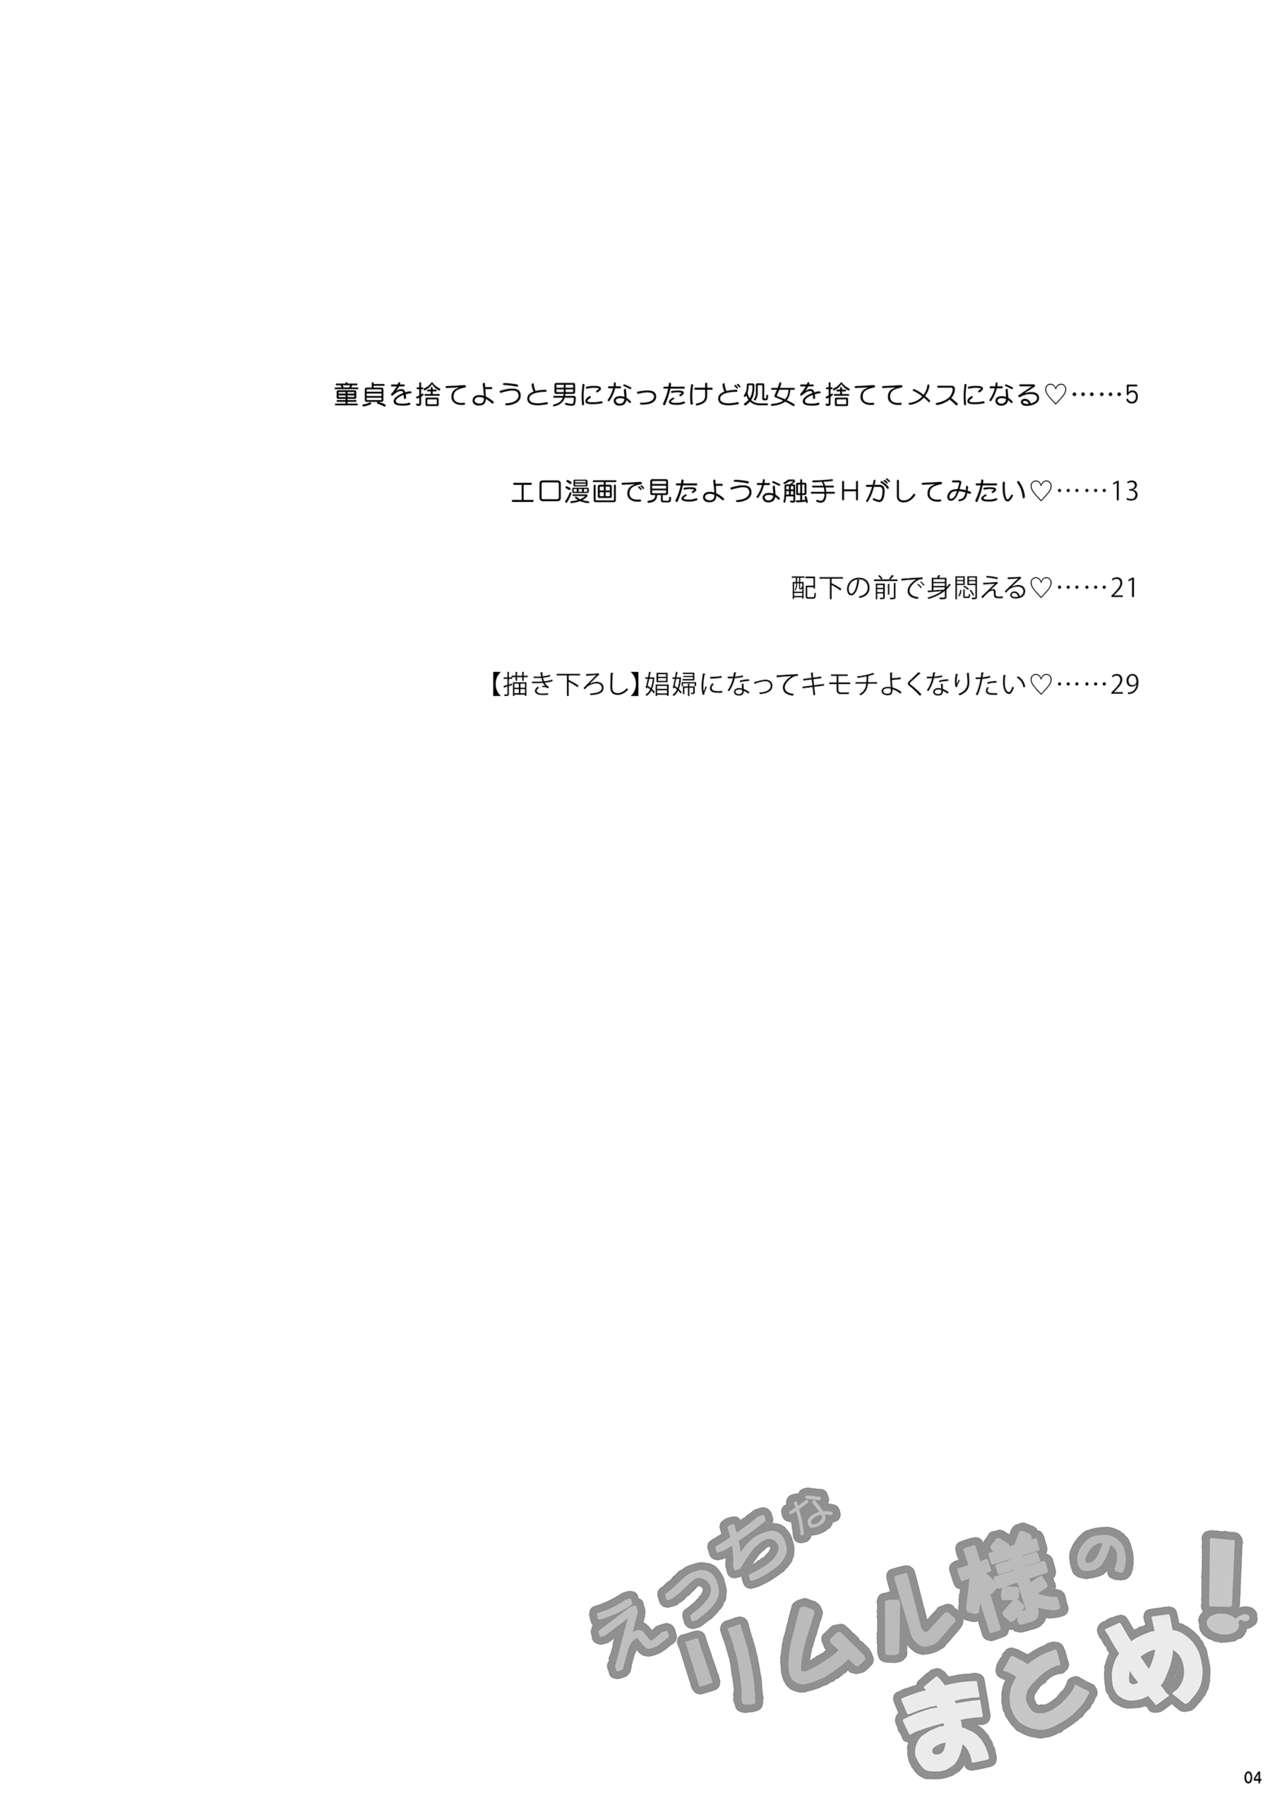 Red Etchina Rimuru-sama No Matome - Tensei shitara slime datta ken Gordinha - Page 3